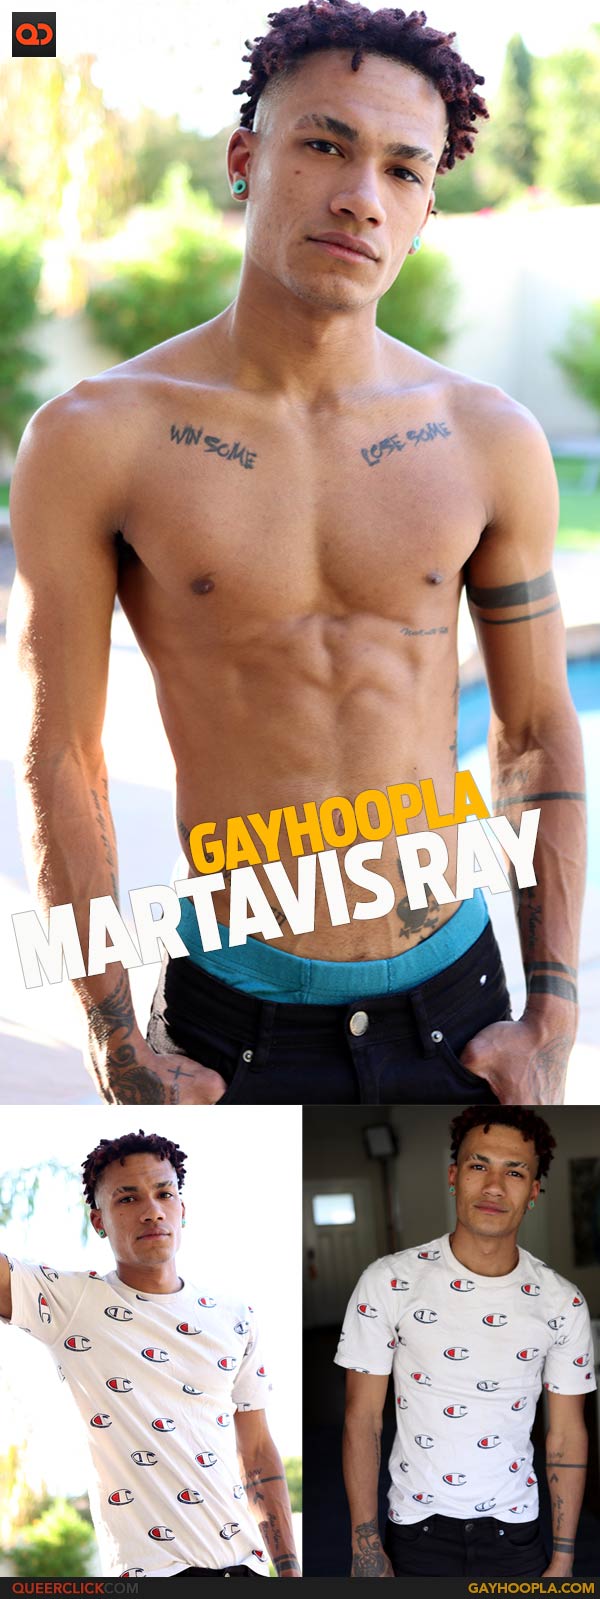 GayHoopla: Martavis Ray - QueerClick